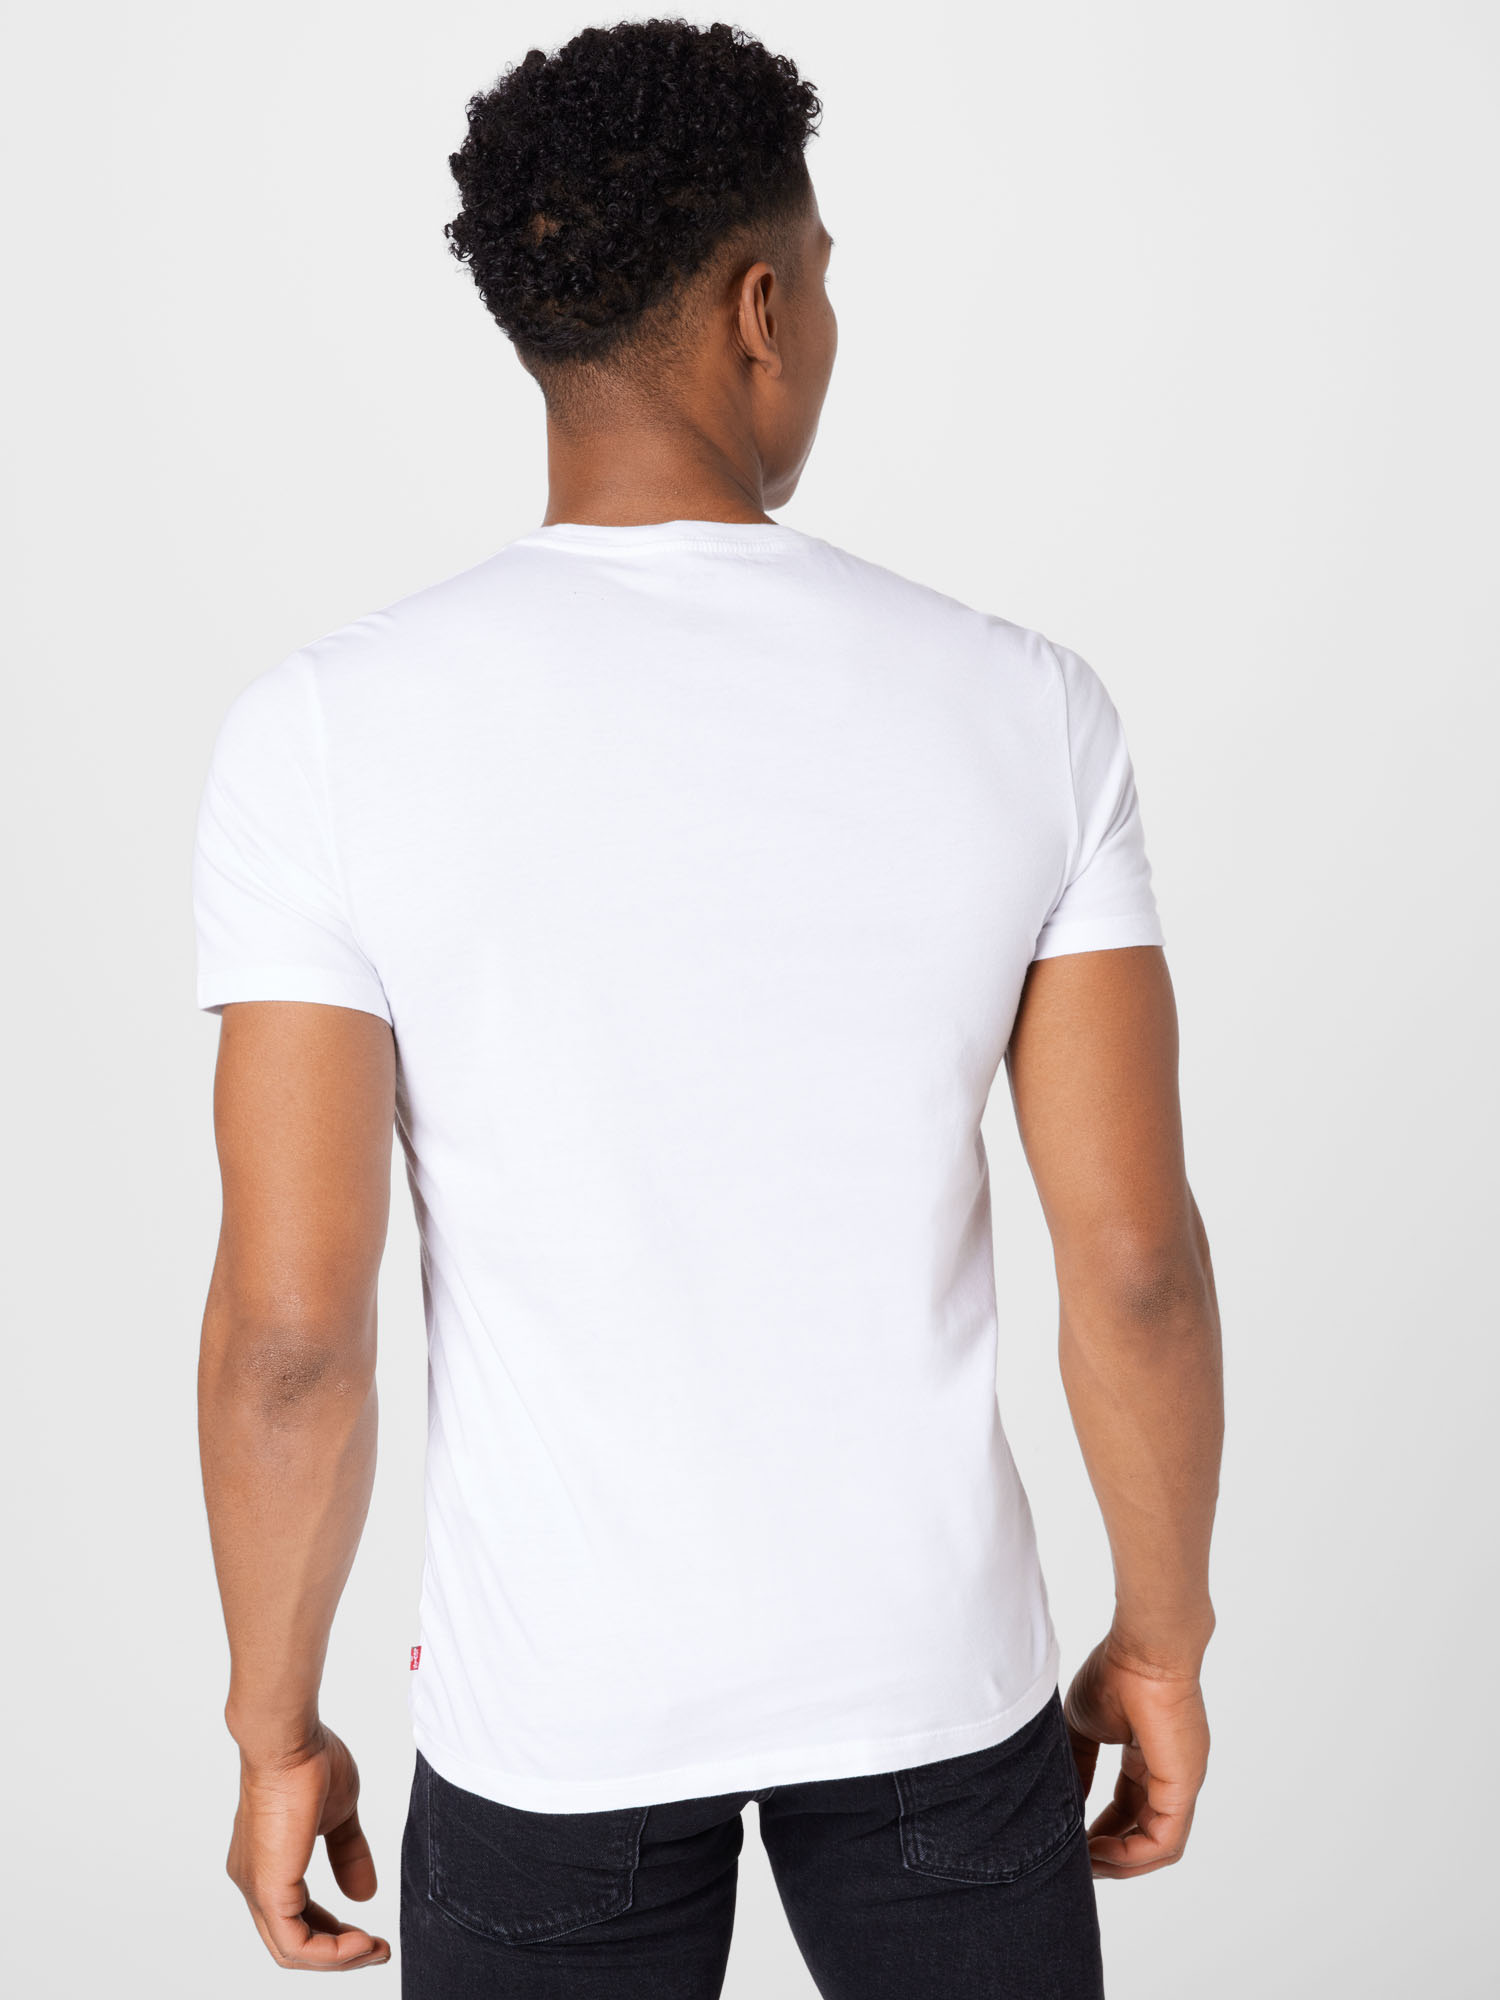 Odzież 3UENs LEVIS Koszulka w kolorze Biały, Granatowym 